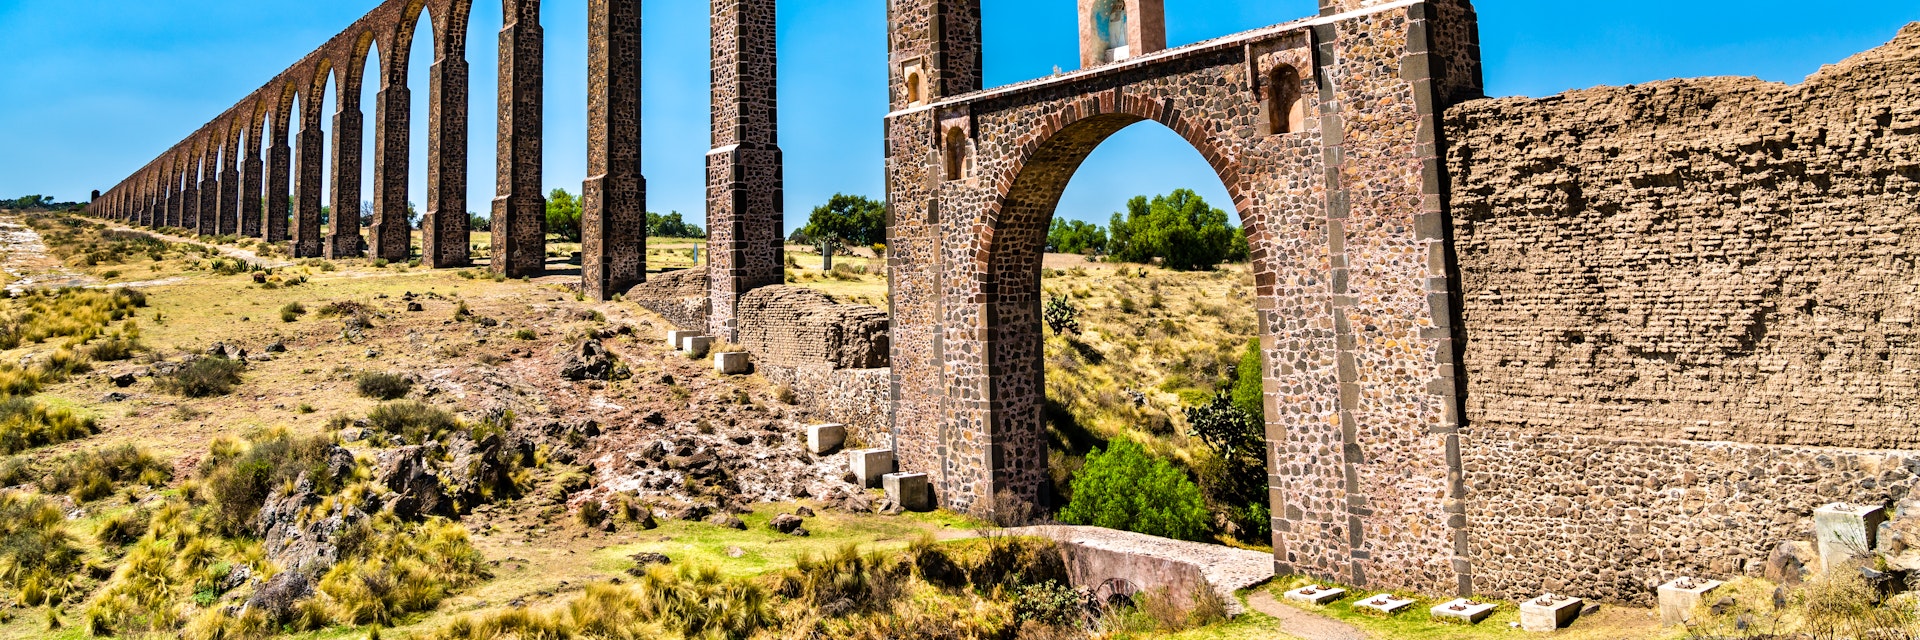 Aqueduct of Padre Tembleque, UNESCO world heritage in Mexico